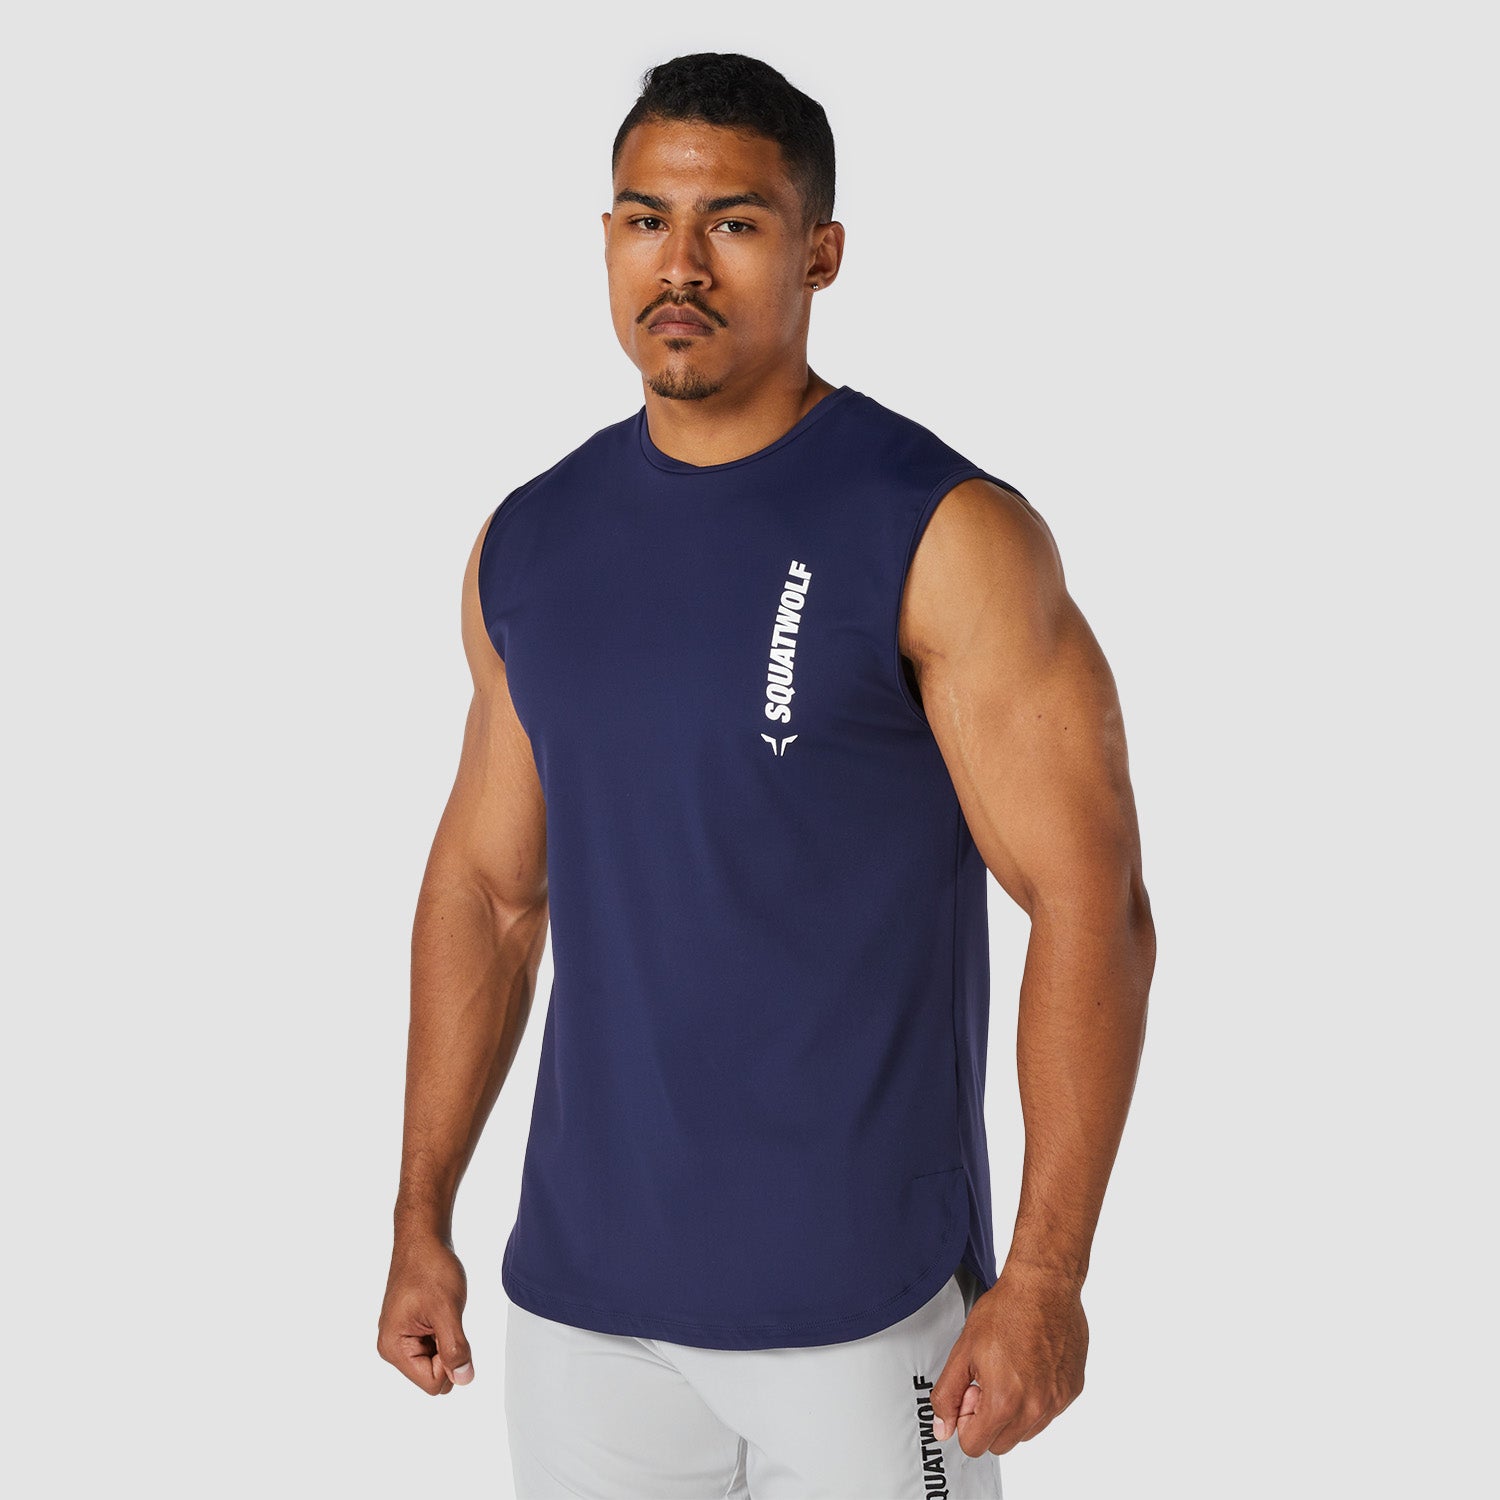 squatwolf-stringer-vests-for-men-warrior-tank-navy-gym-wear